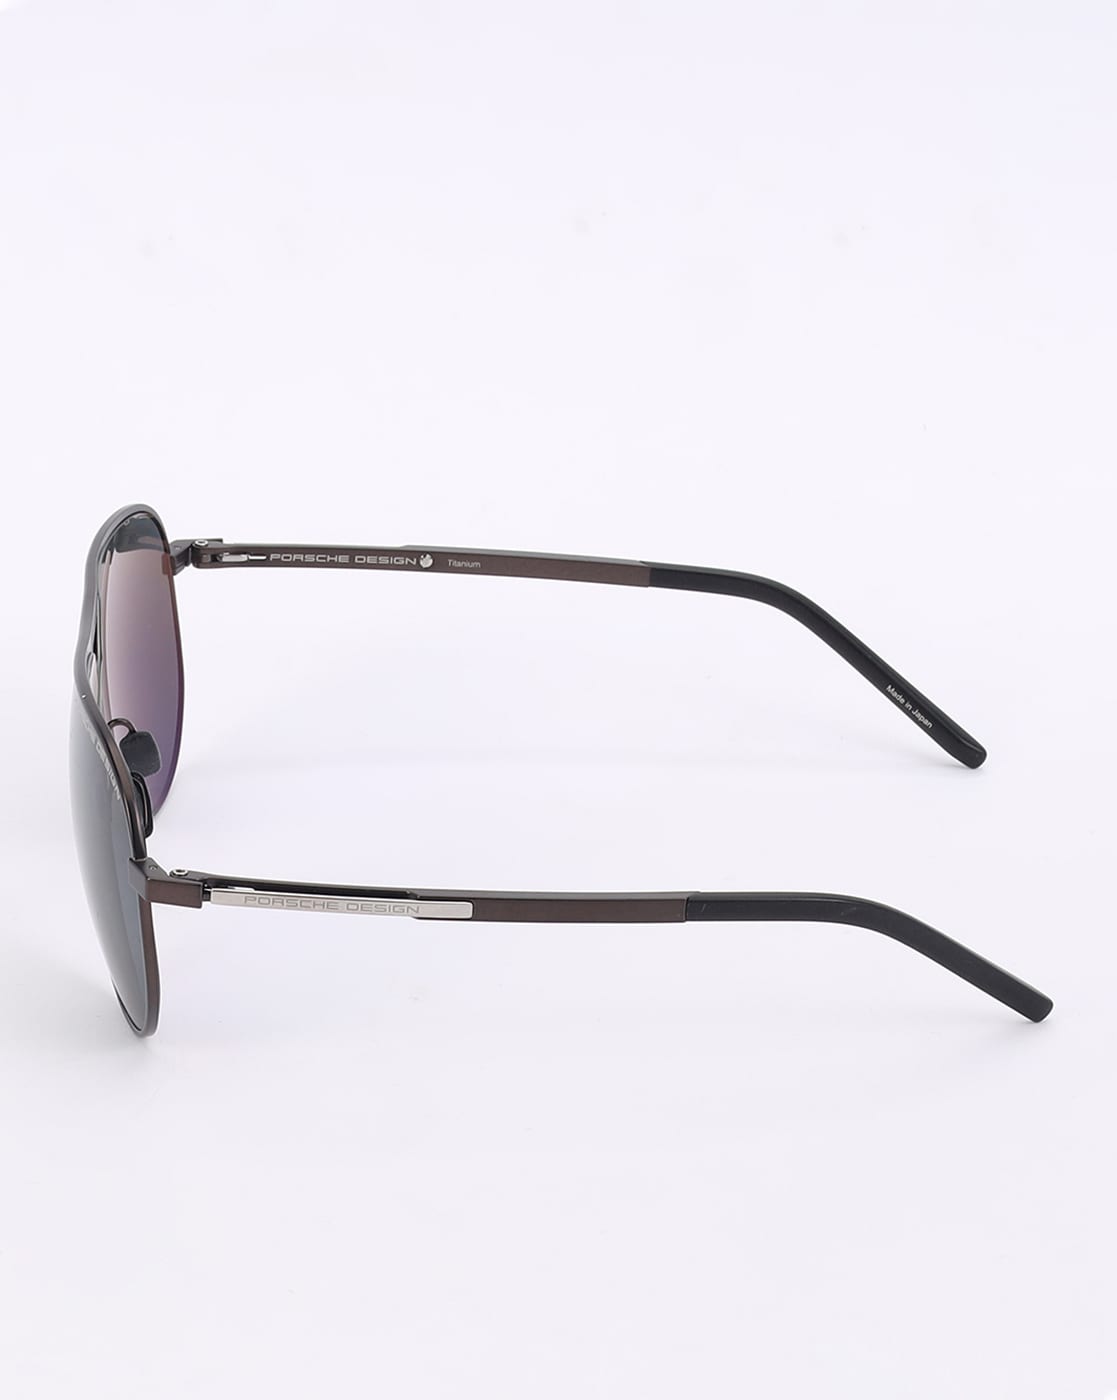 Porsche Design Men's P8678 P/8678 C Gold Titanium Sunglasses W/Extra Lenses  67mm | eBay